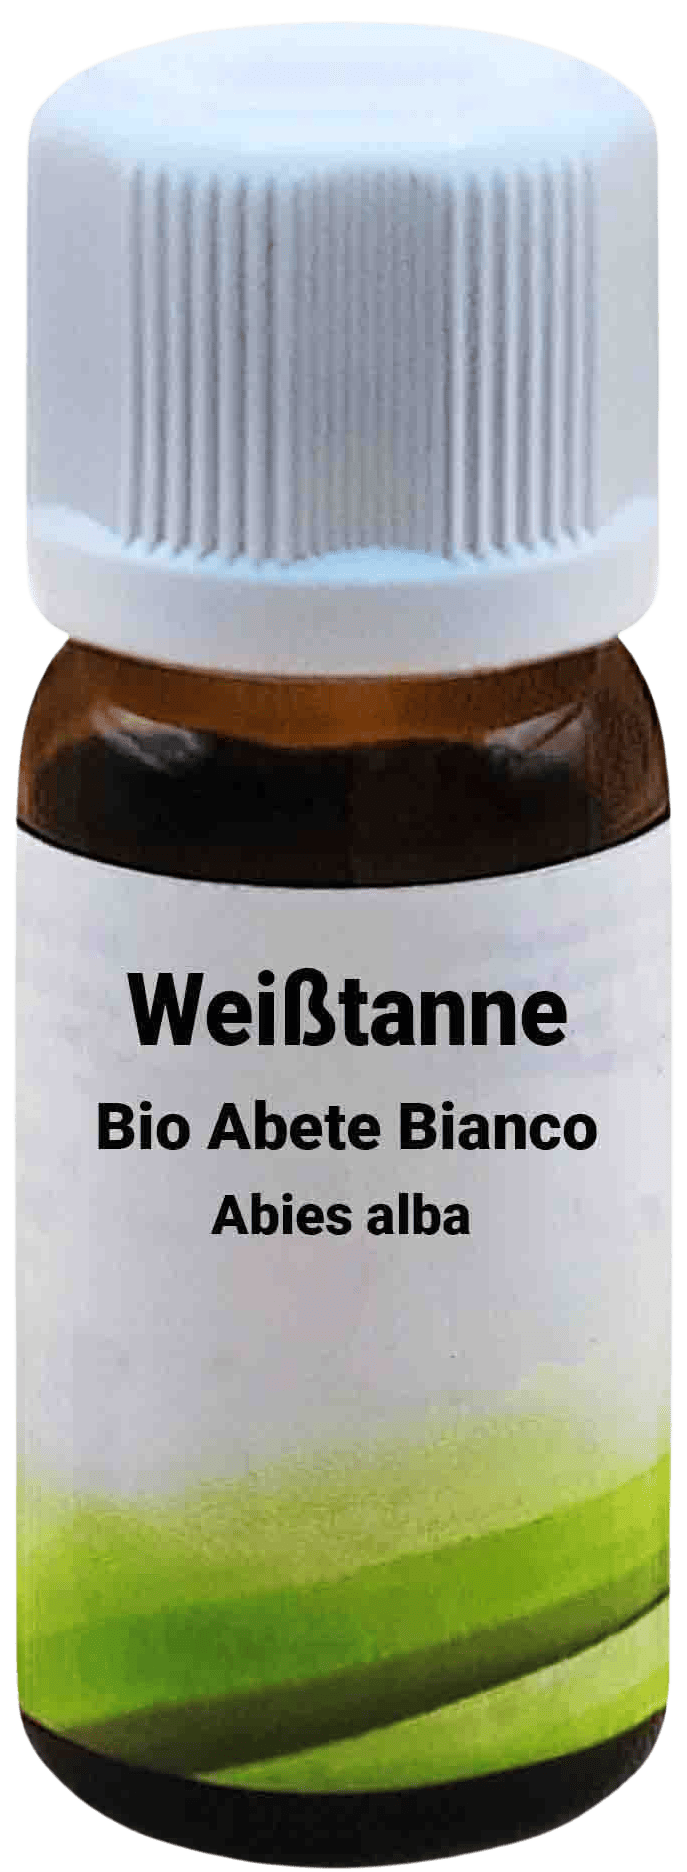 Una bottiglietta di vetro marrone con tappo a vite bianco, etichettata con "Bio Abete Bianco - Abies alba 10 ml". L'etichetta mostra un design minimalista verde.